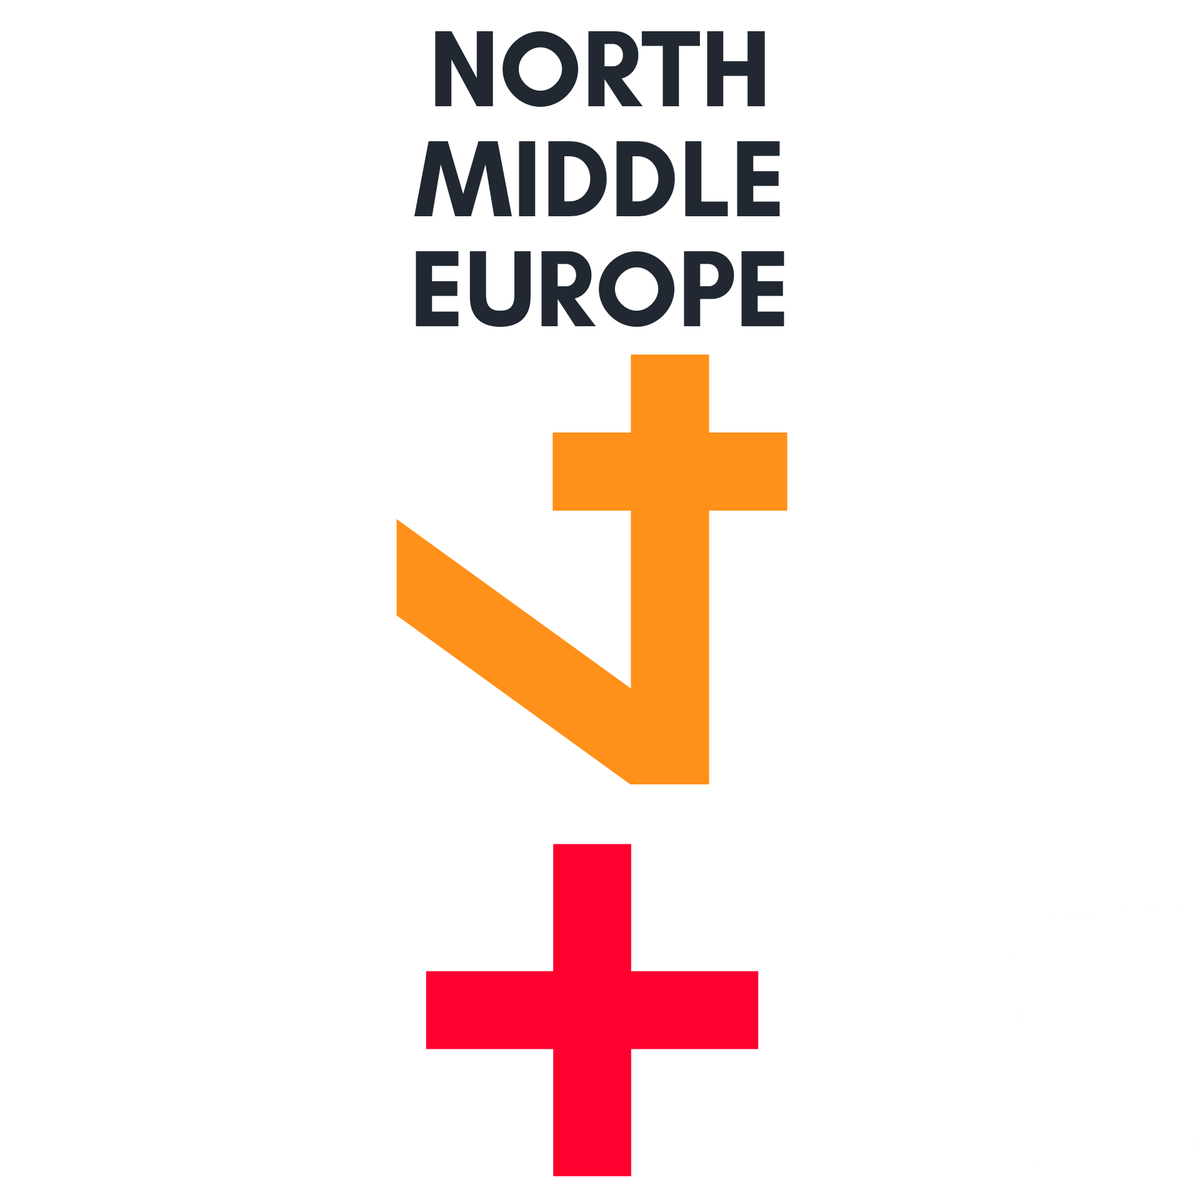 +4 North Middle Europe Design Art.
#logo #logos #logodesign #logomaker #DESIGNART #design #designinspiration #Font #Designship2022 #designthinking #design #designjobs #DesignGrowth #designtwitter #Logodesigner